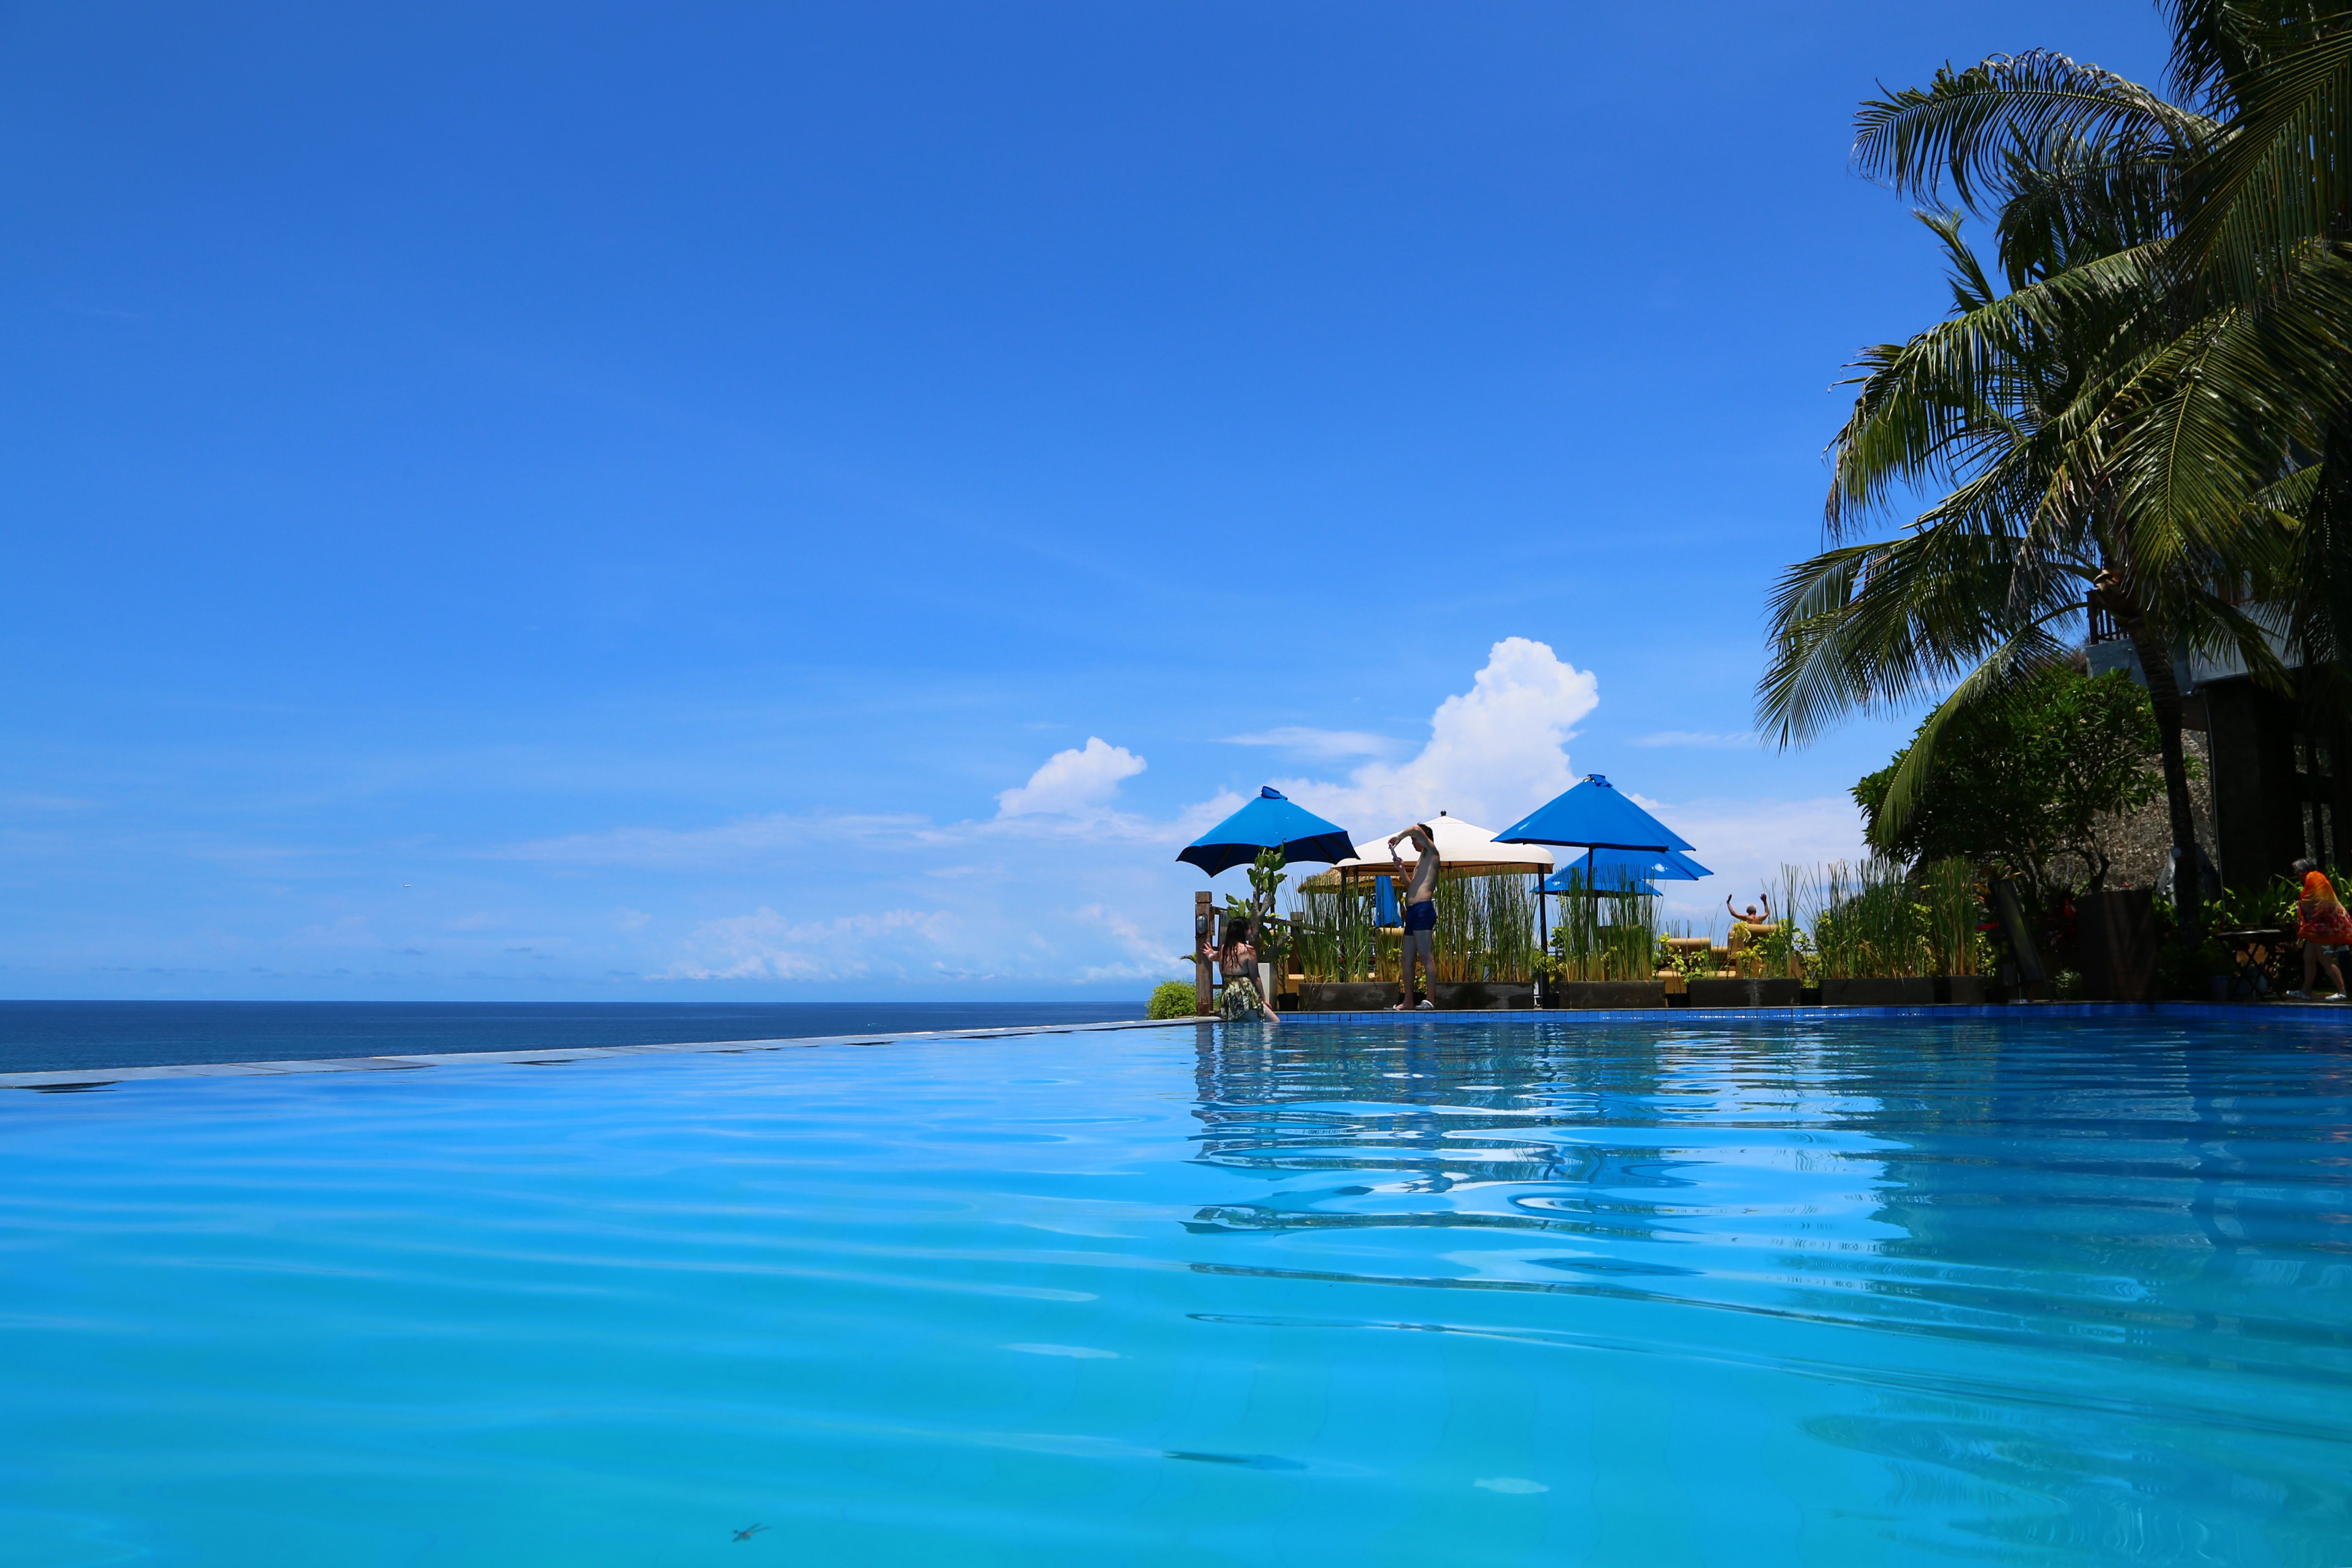 巴厘岛旅游景点,巴厘岛旅游景区,巴厘岛旅游景点推荐-蚂蜂窝旅游指南